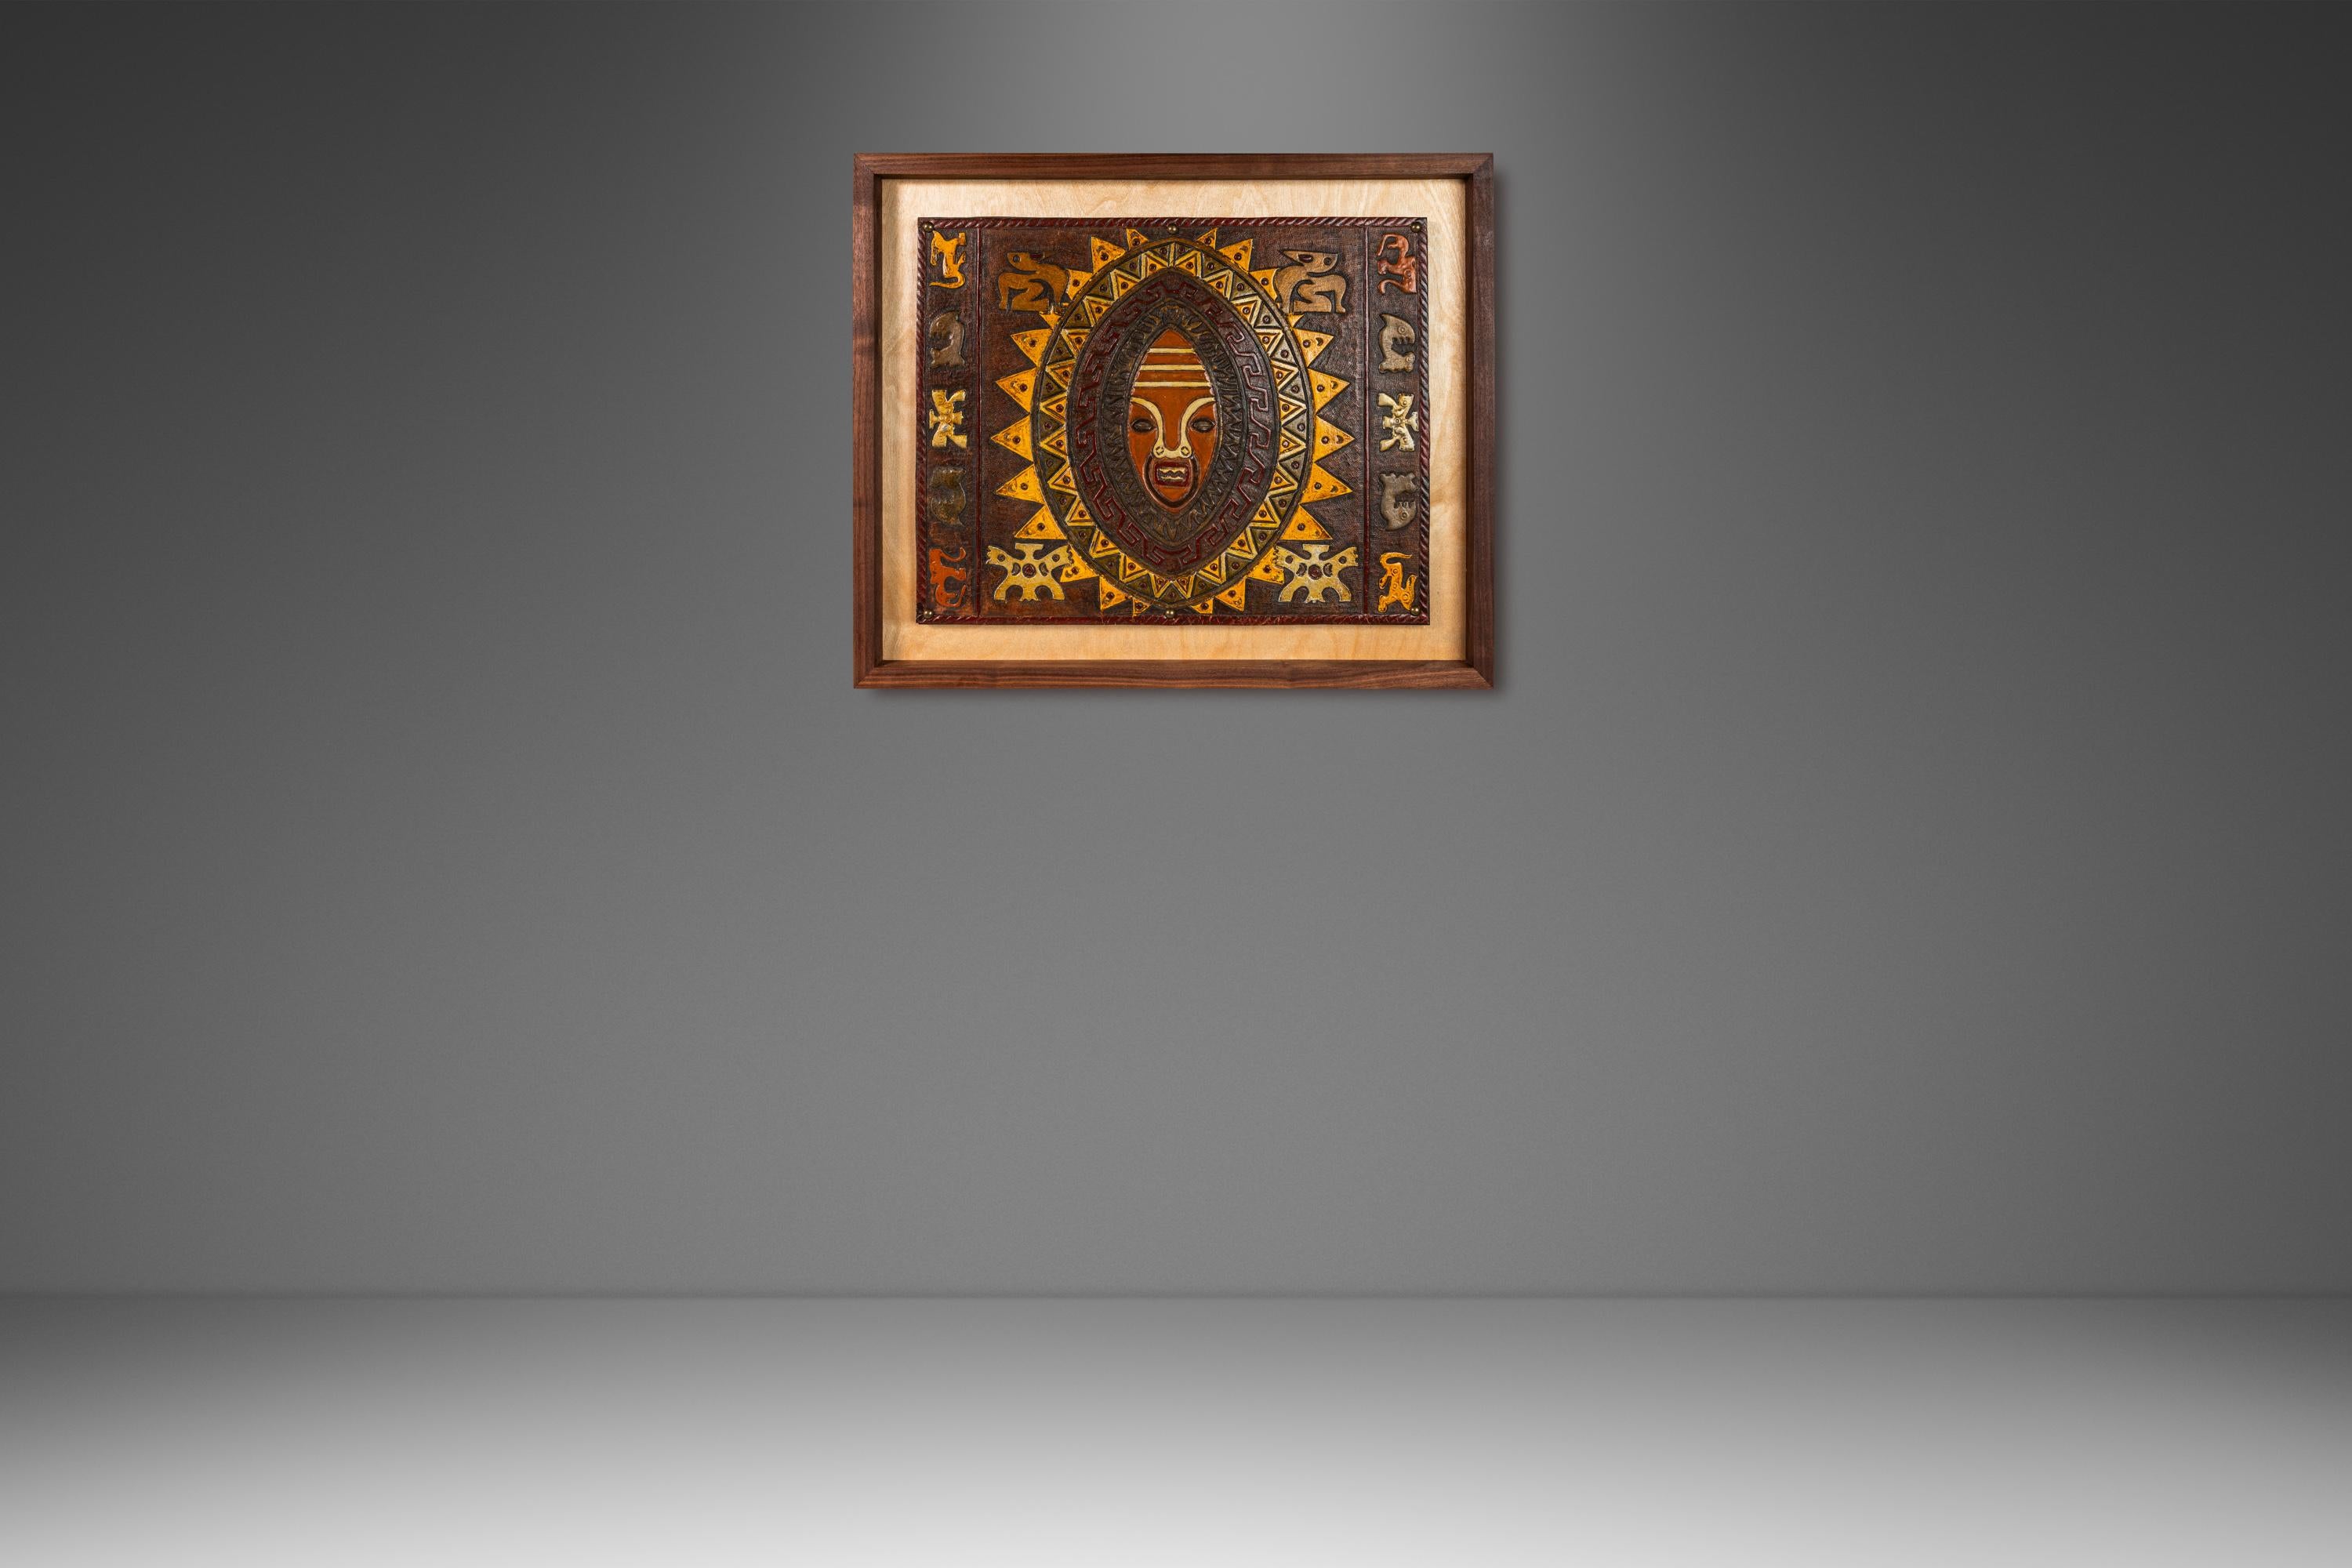  Der unvergleichliche Möbeldesigner und Kunsthandwerker Angel Pazmino stellt eine außergewöhnliche, individuell gerahmte Kunst aus geprägtem Leder vor. Dieses einzigartige Kunstwerk wurde aus einer Reihe von Sling-Stühlen von Pazmino geschnitten und